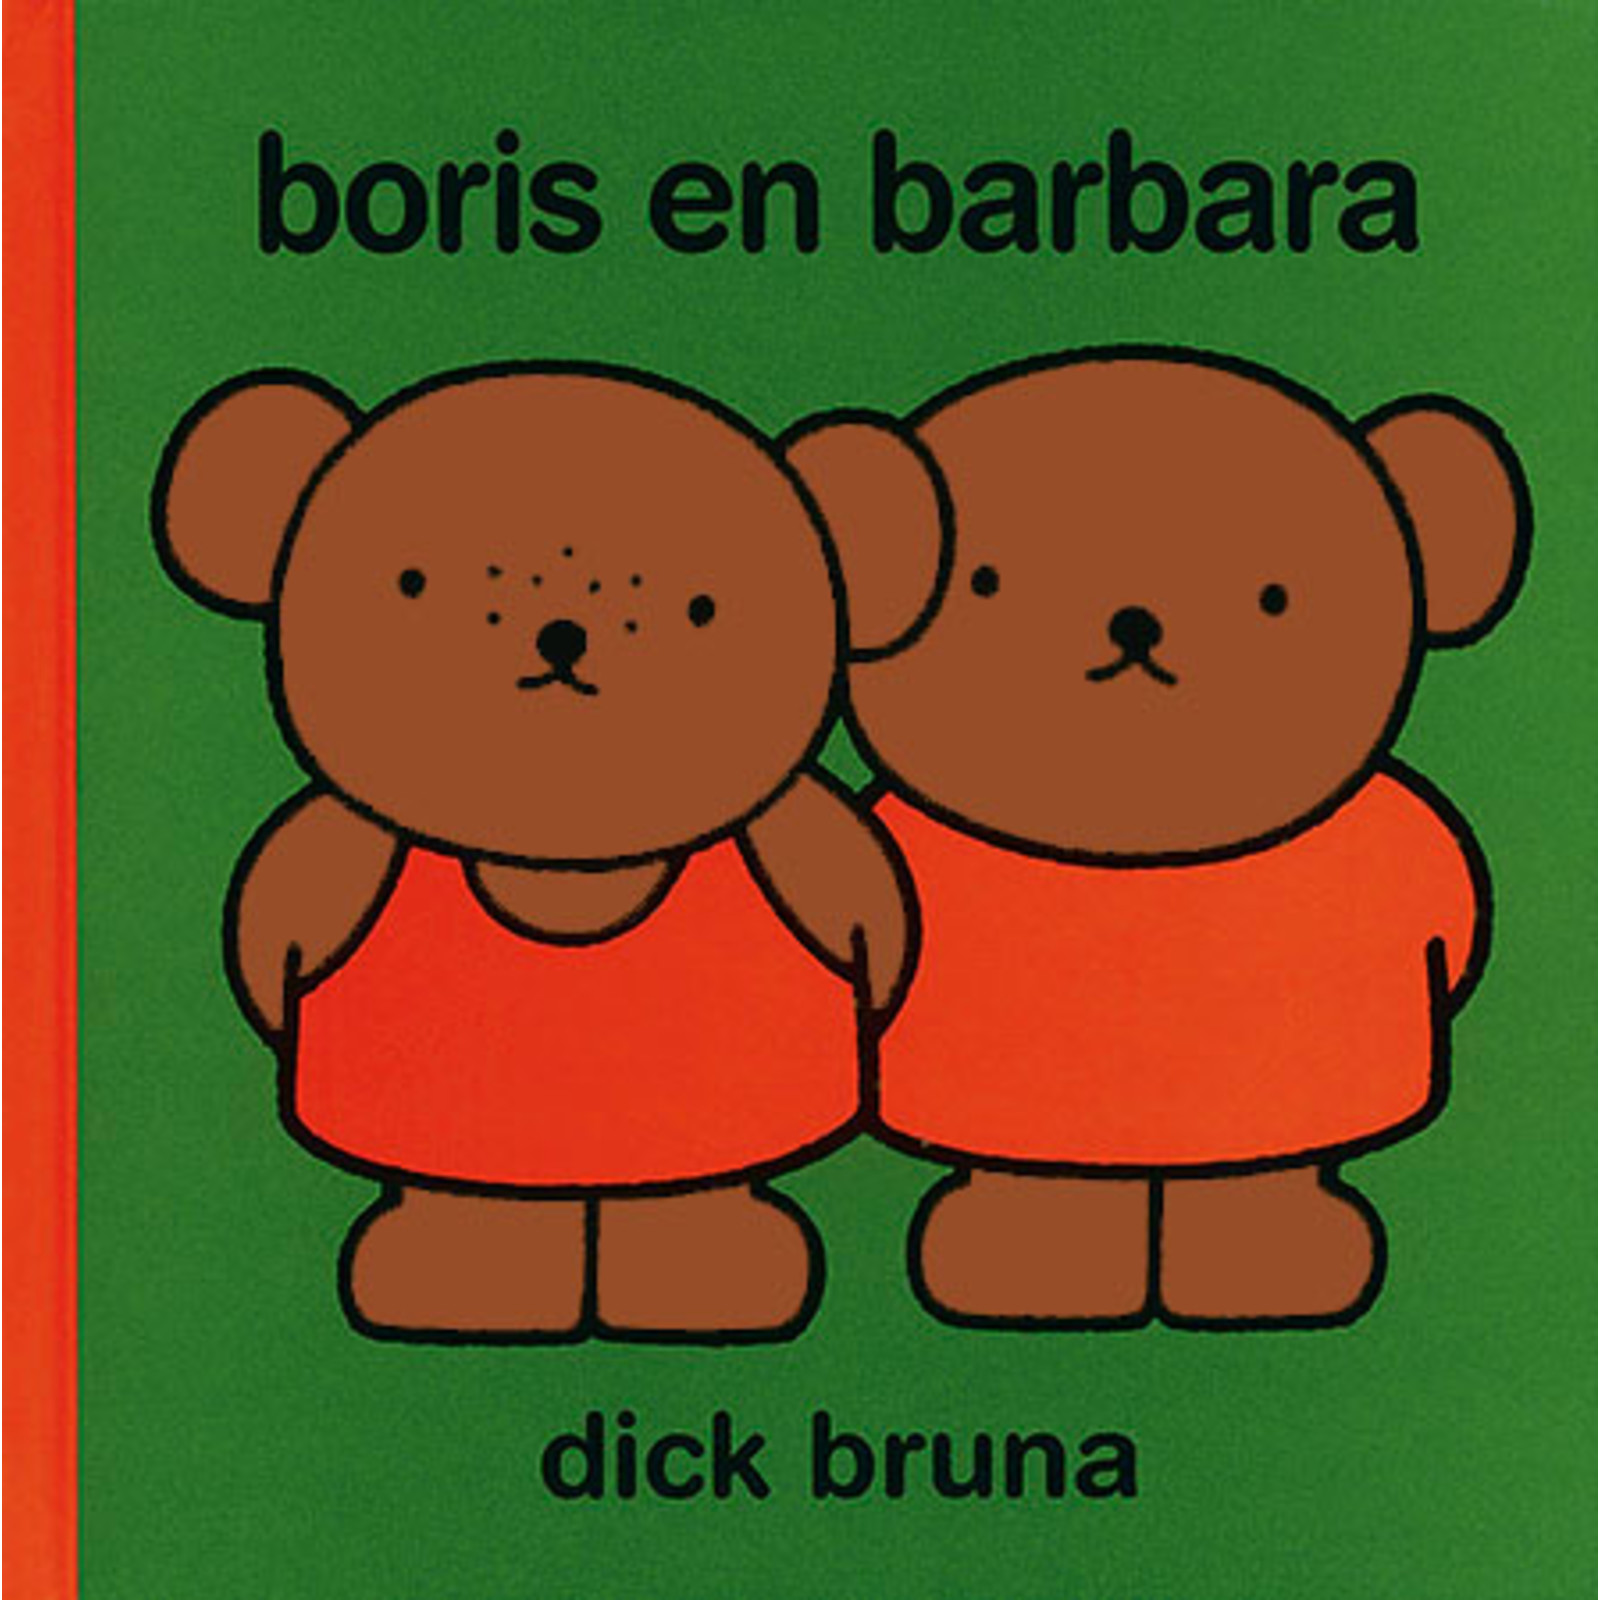 boris en barbara (boris and barbara)